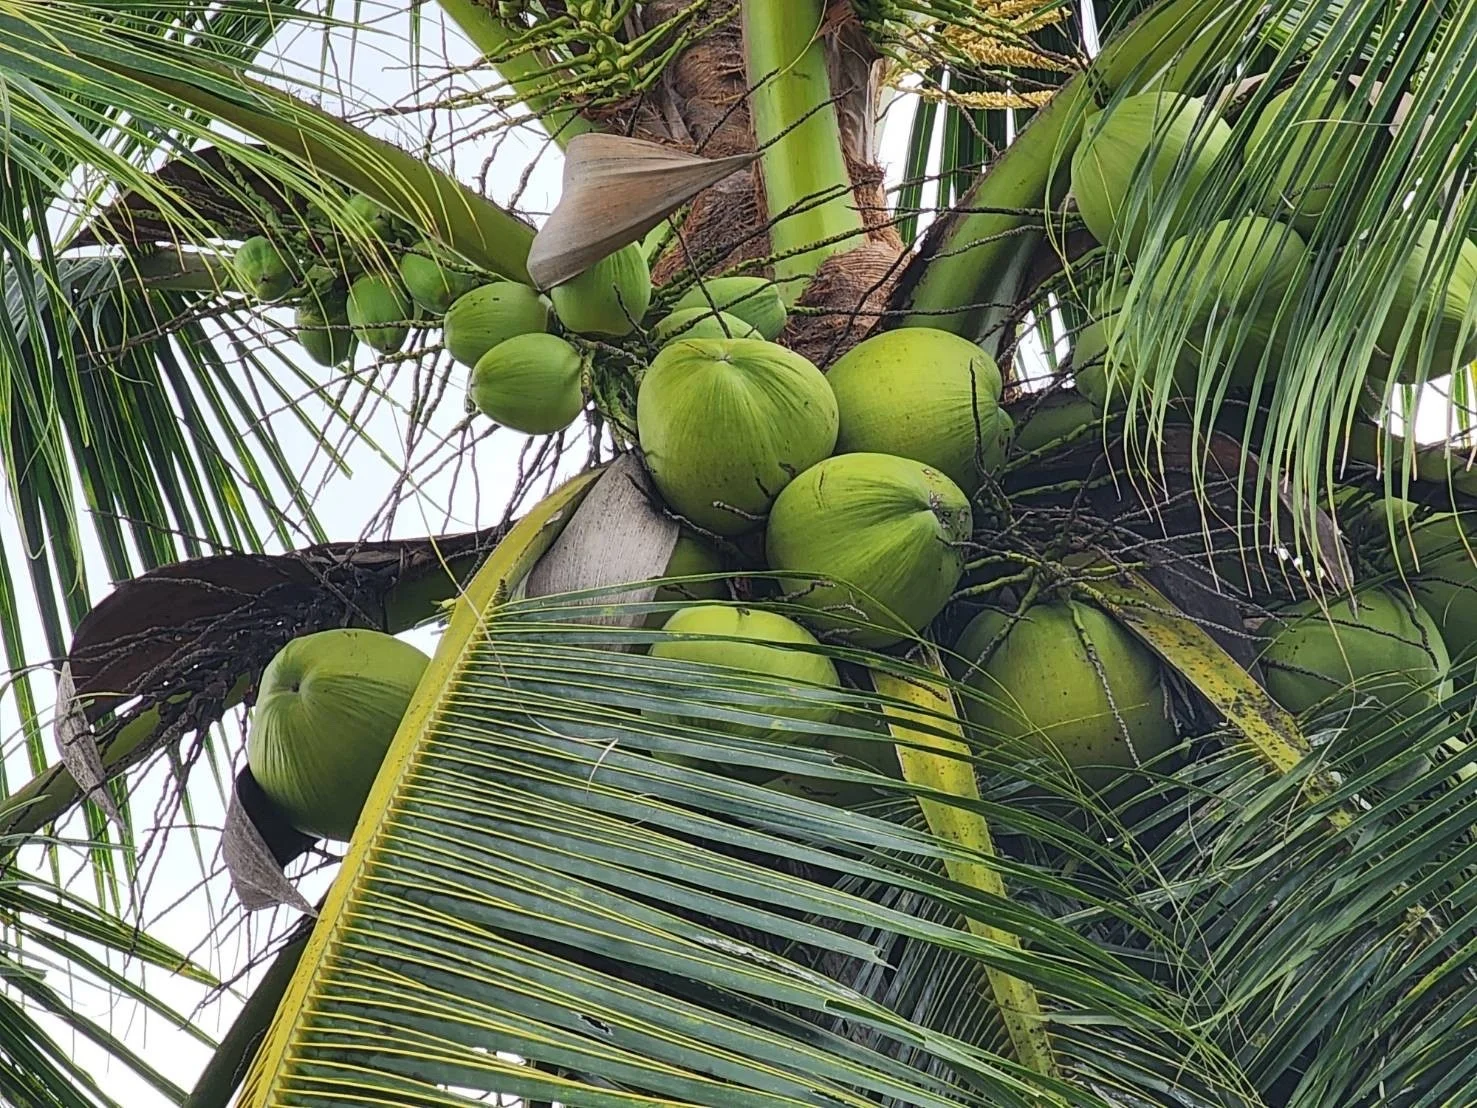 UHT/Prisma/асептическая 100% кокосовая вода из Таиланда обычная и Органическая вегетарианский здоровый продукт на растительной